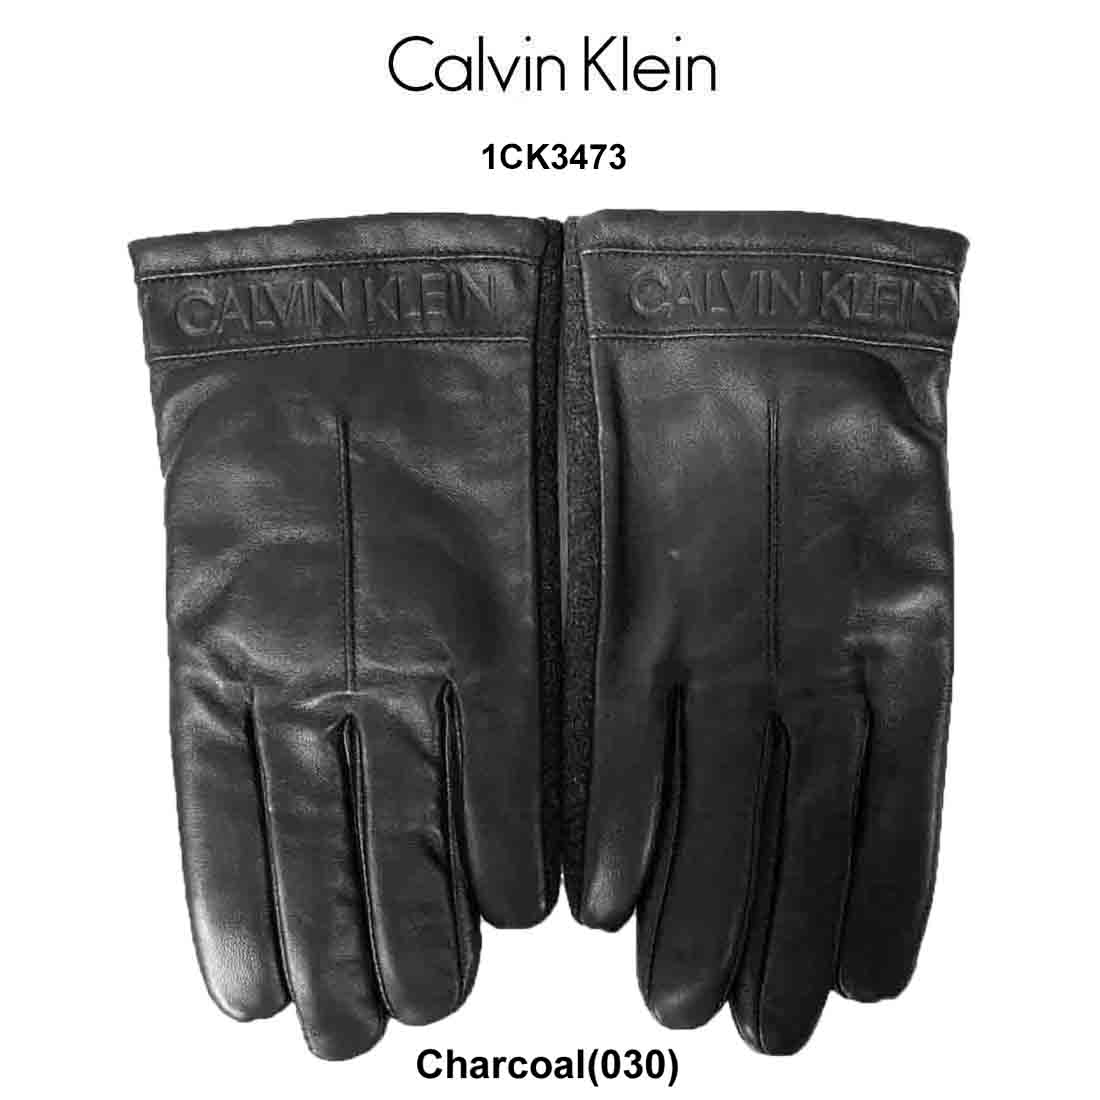 送料無料 並行輸入品 Sale Calvin Klein 爆安 カルバンクライン タッチグローブ 手袋 メンズ 1ck3473 スマホ レザー